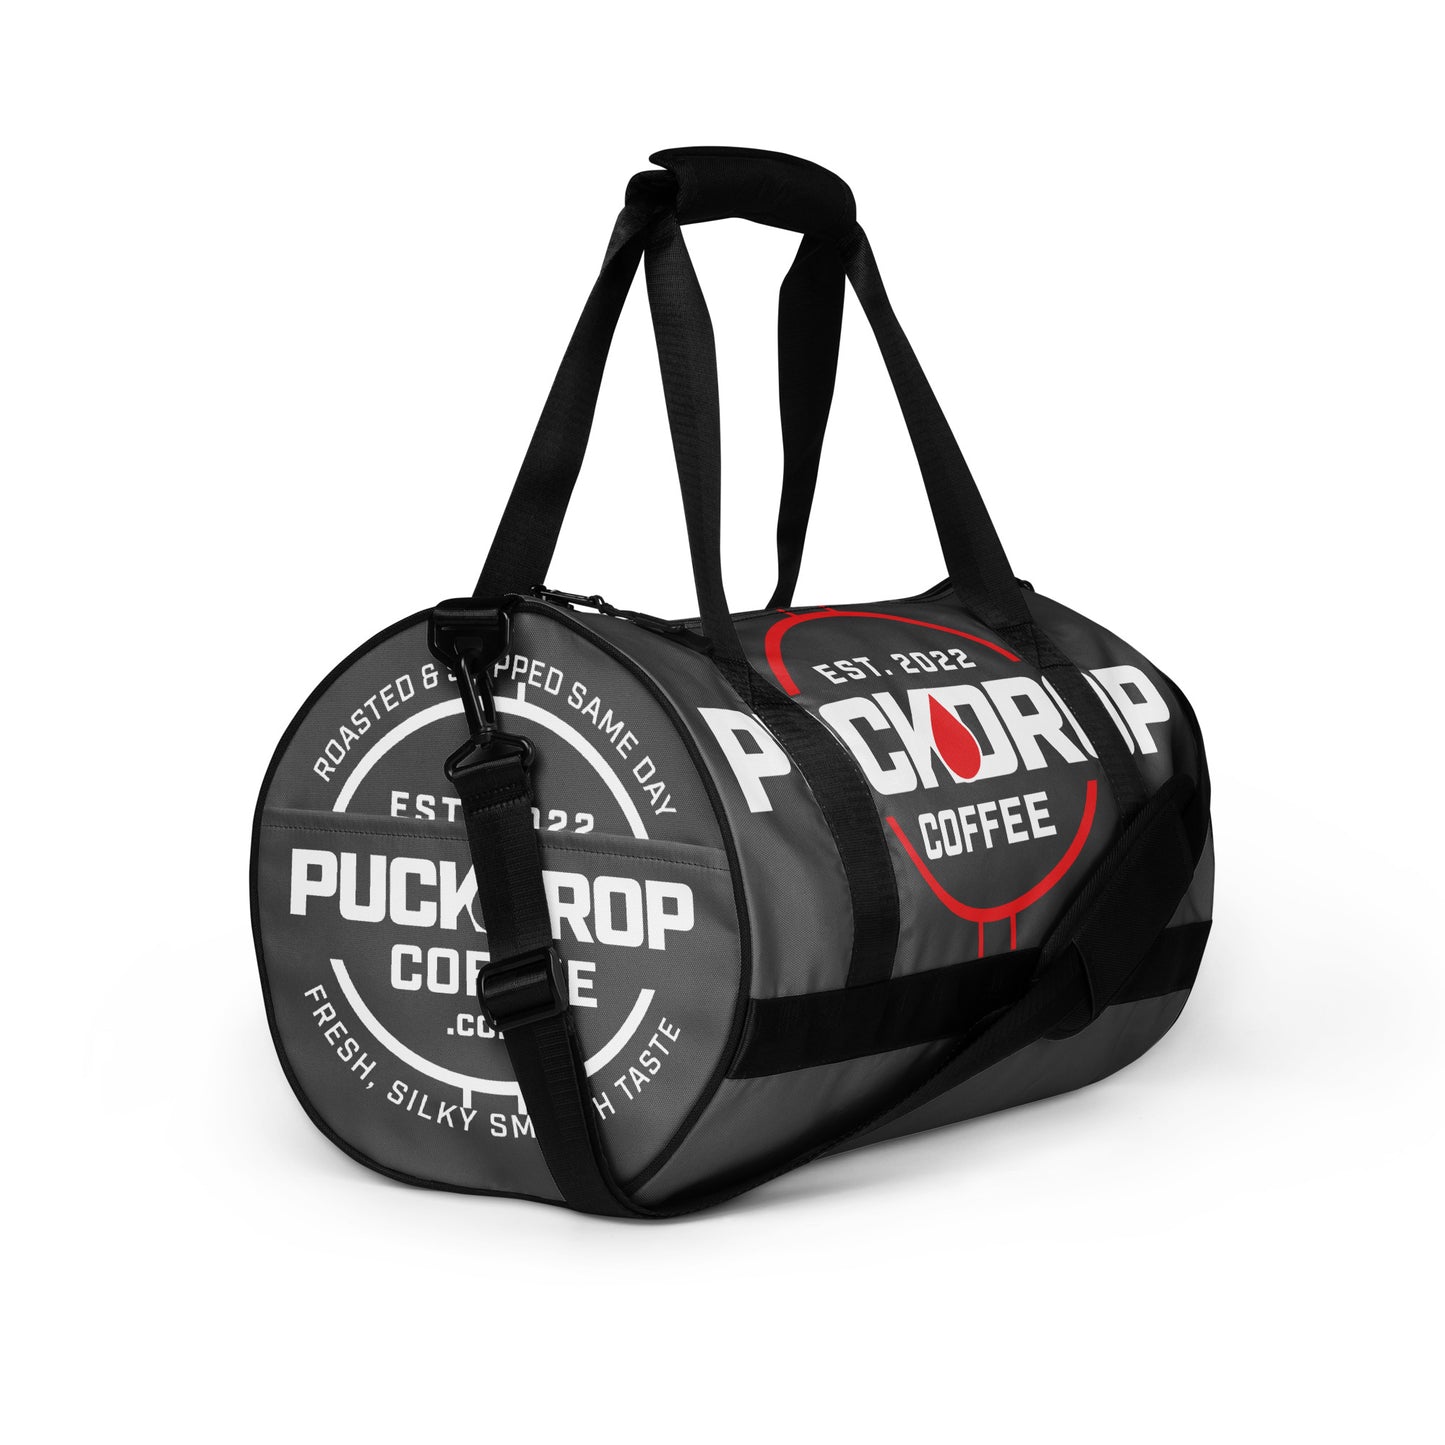 PUCKDROP gym bag